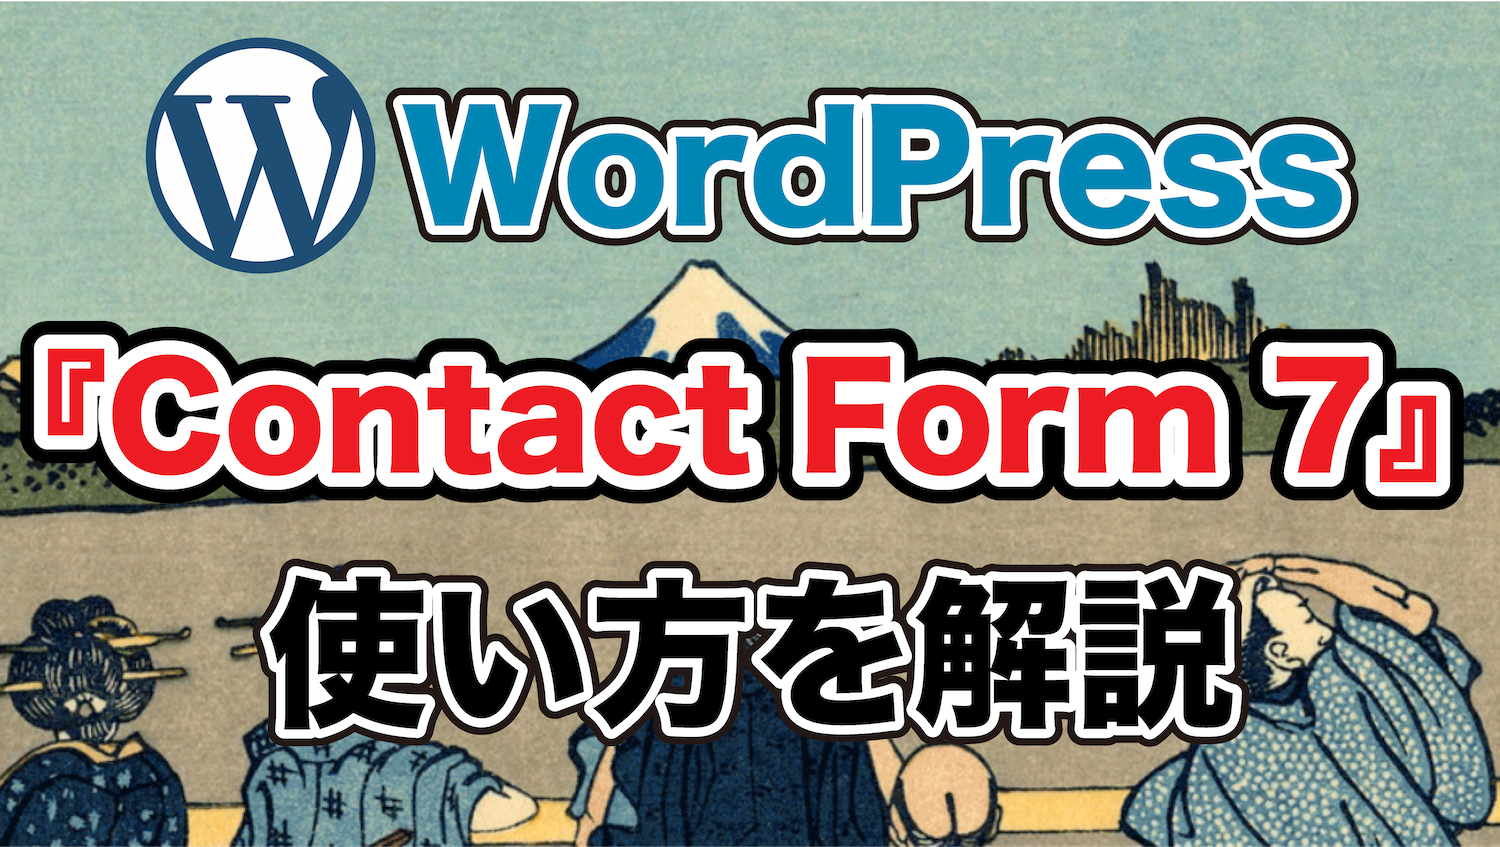 Contact Form 7, WordPressプラグイン, お問い合わせフォーム, ブログ